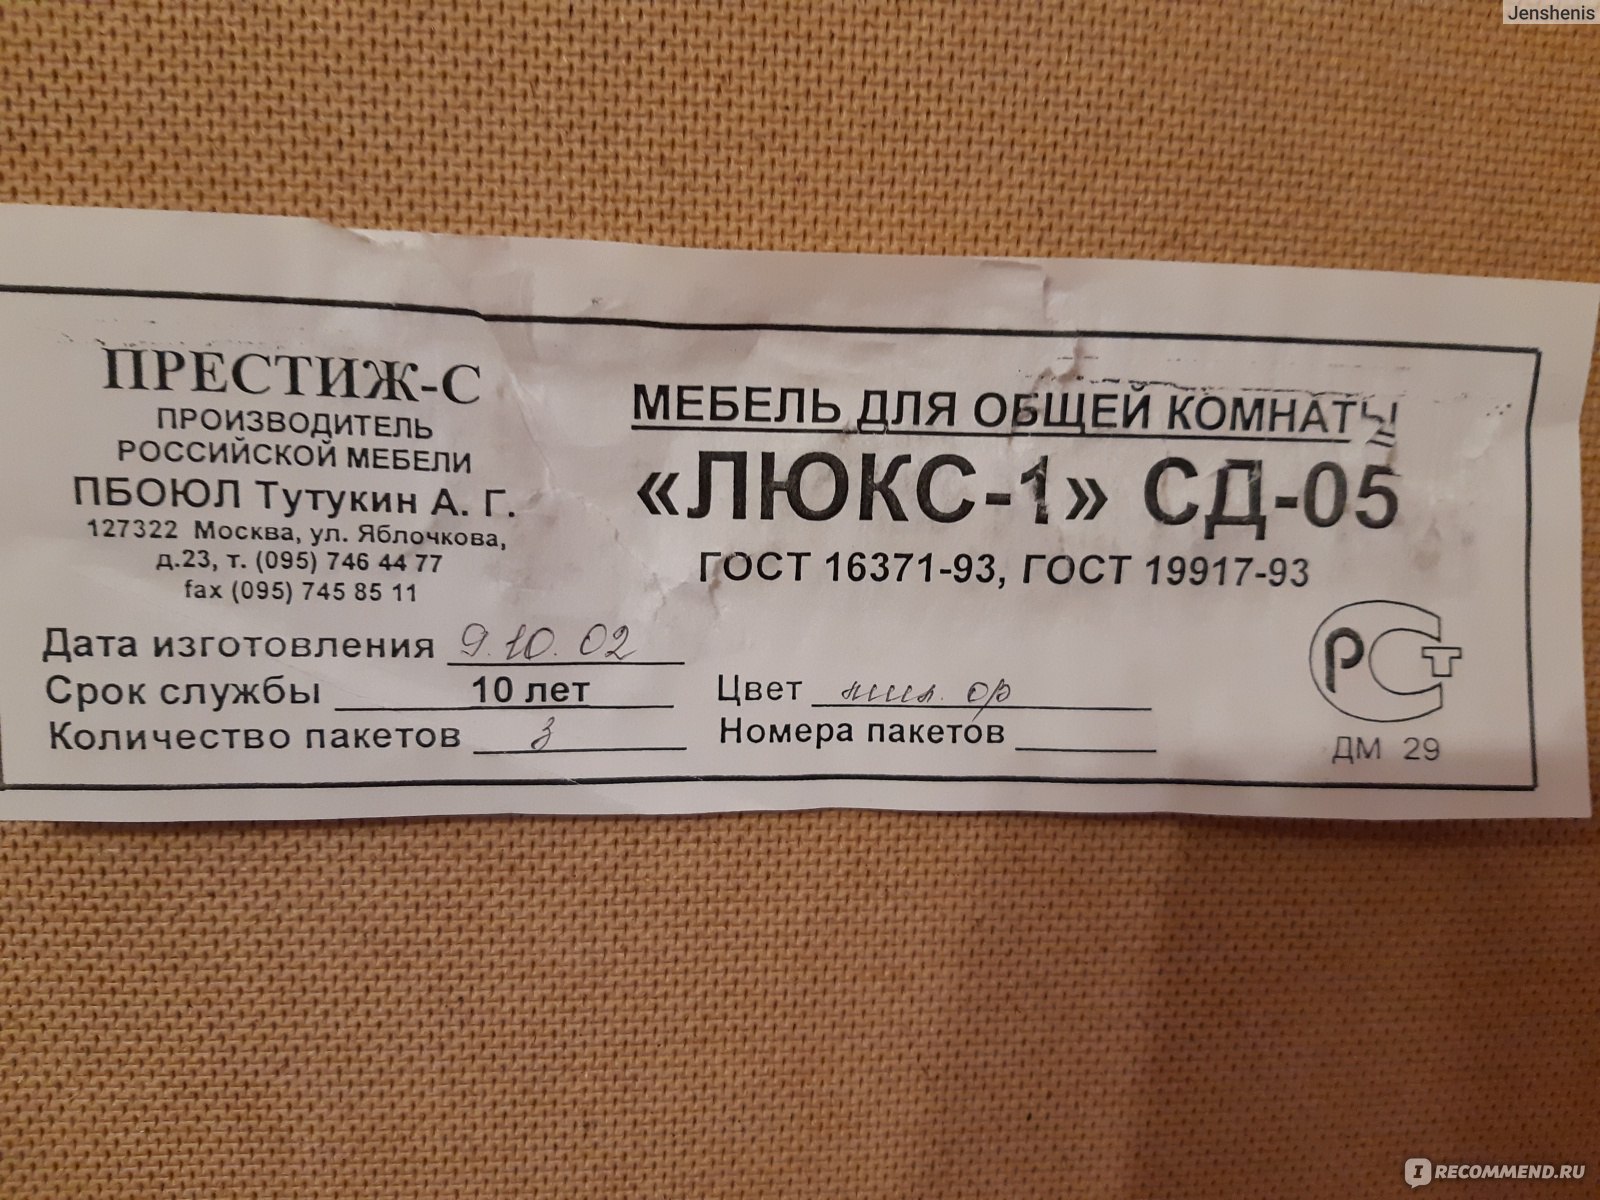 Авито.ру Москва показать пальто на сентипоне и цена